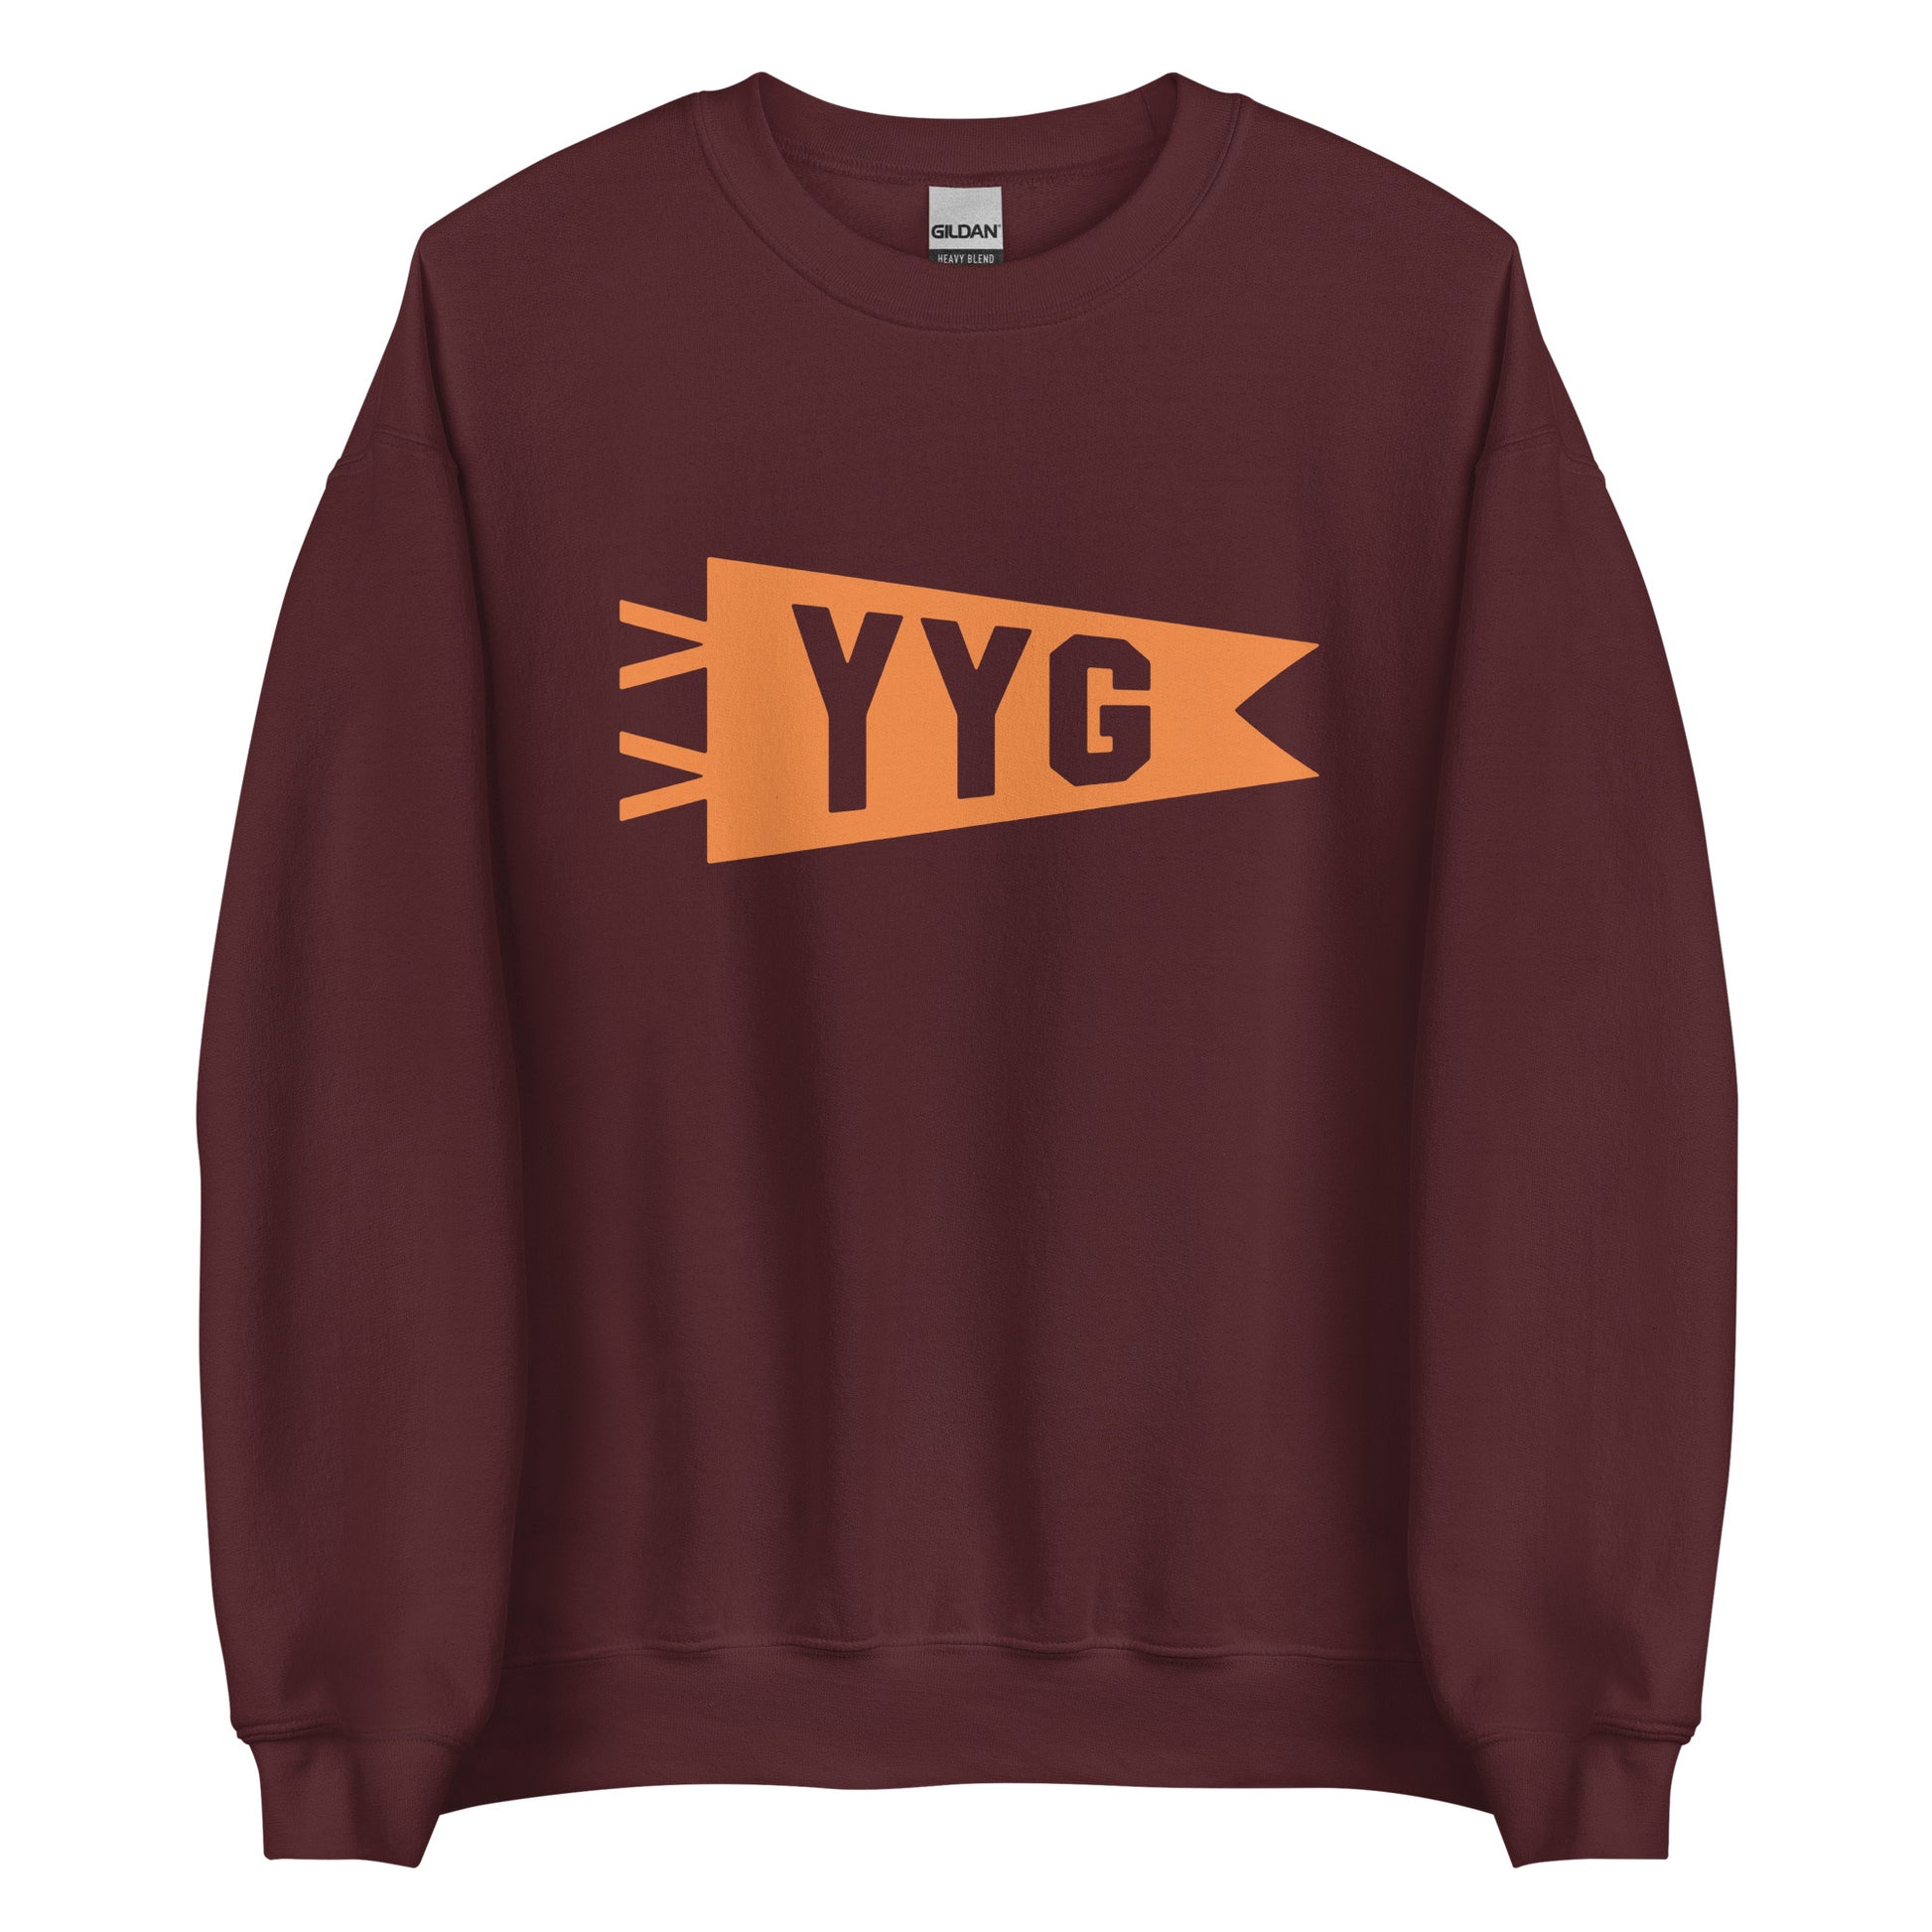 Airport Code Sweatshirt - Orange Graphic • YYG Charlottetown • YHM Designs - Image 05